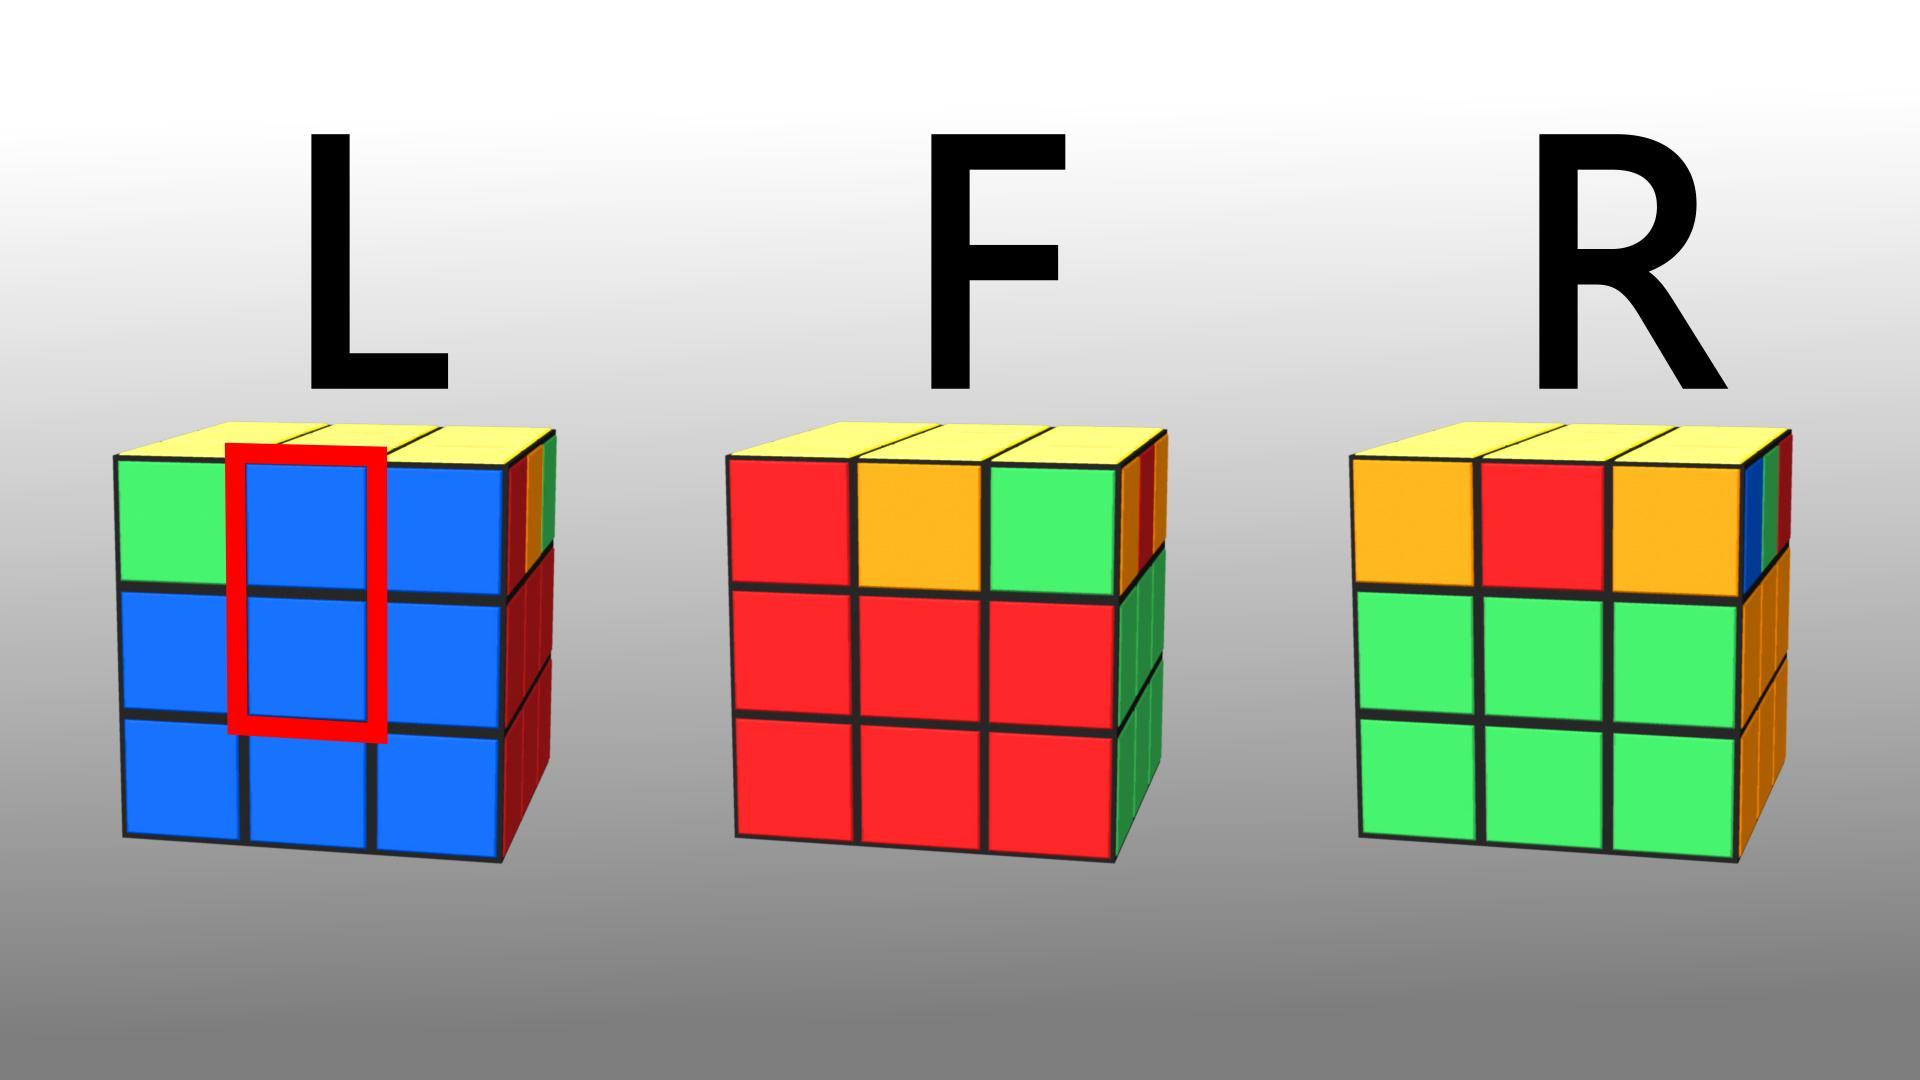 Кубик рубик буквы. Алгоритм Бога для кубика Рубика. Кубик рубик алгоритм Бога. Цвета кубика Рубика 3х3. Алгоритм Бога для кубика Рубика 3х3.